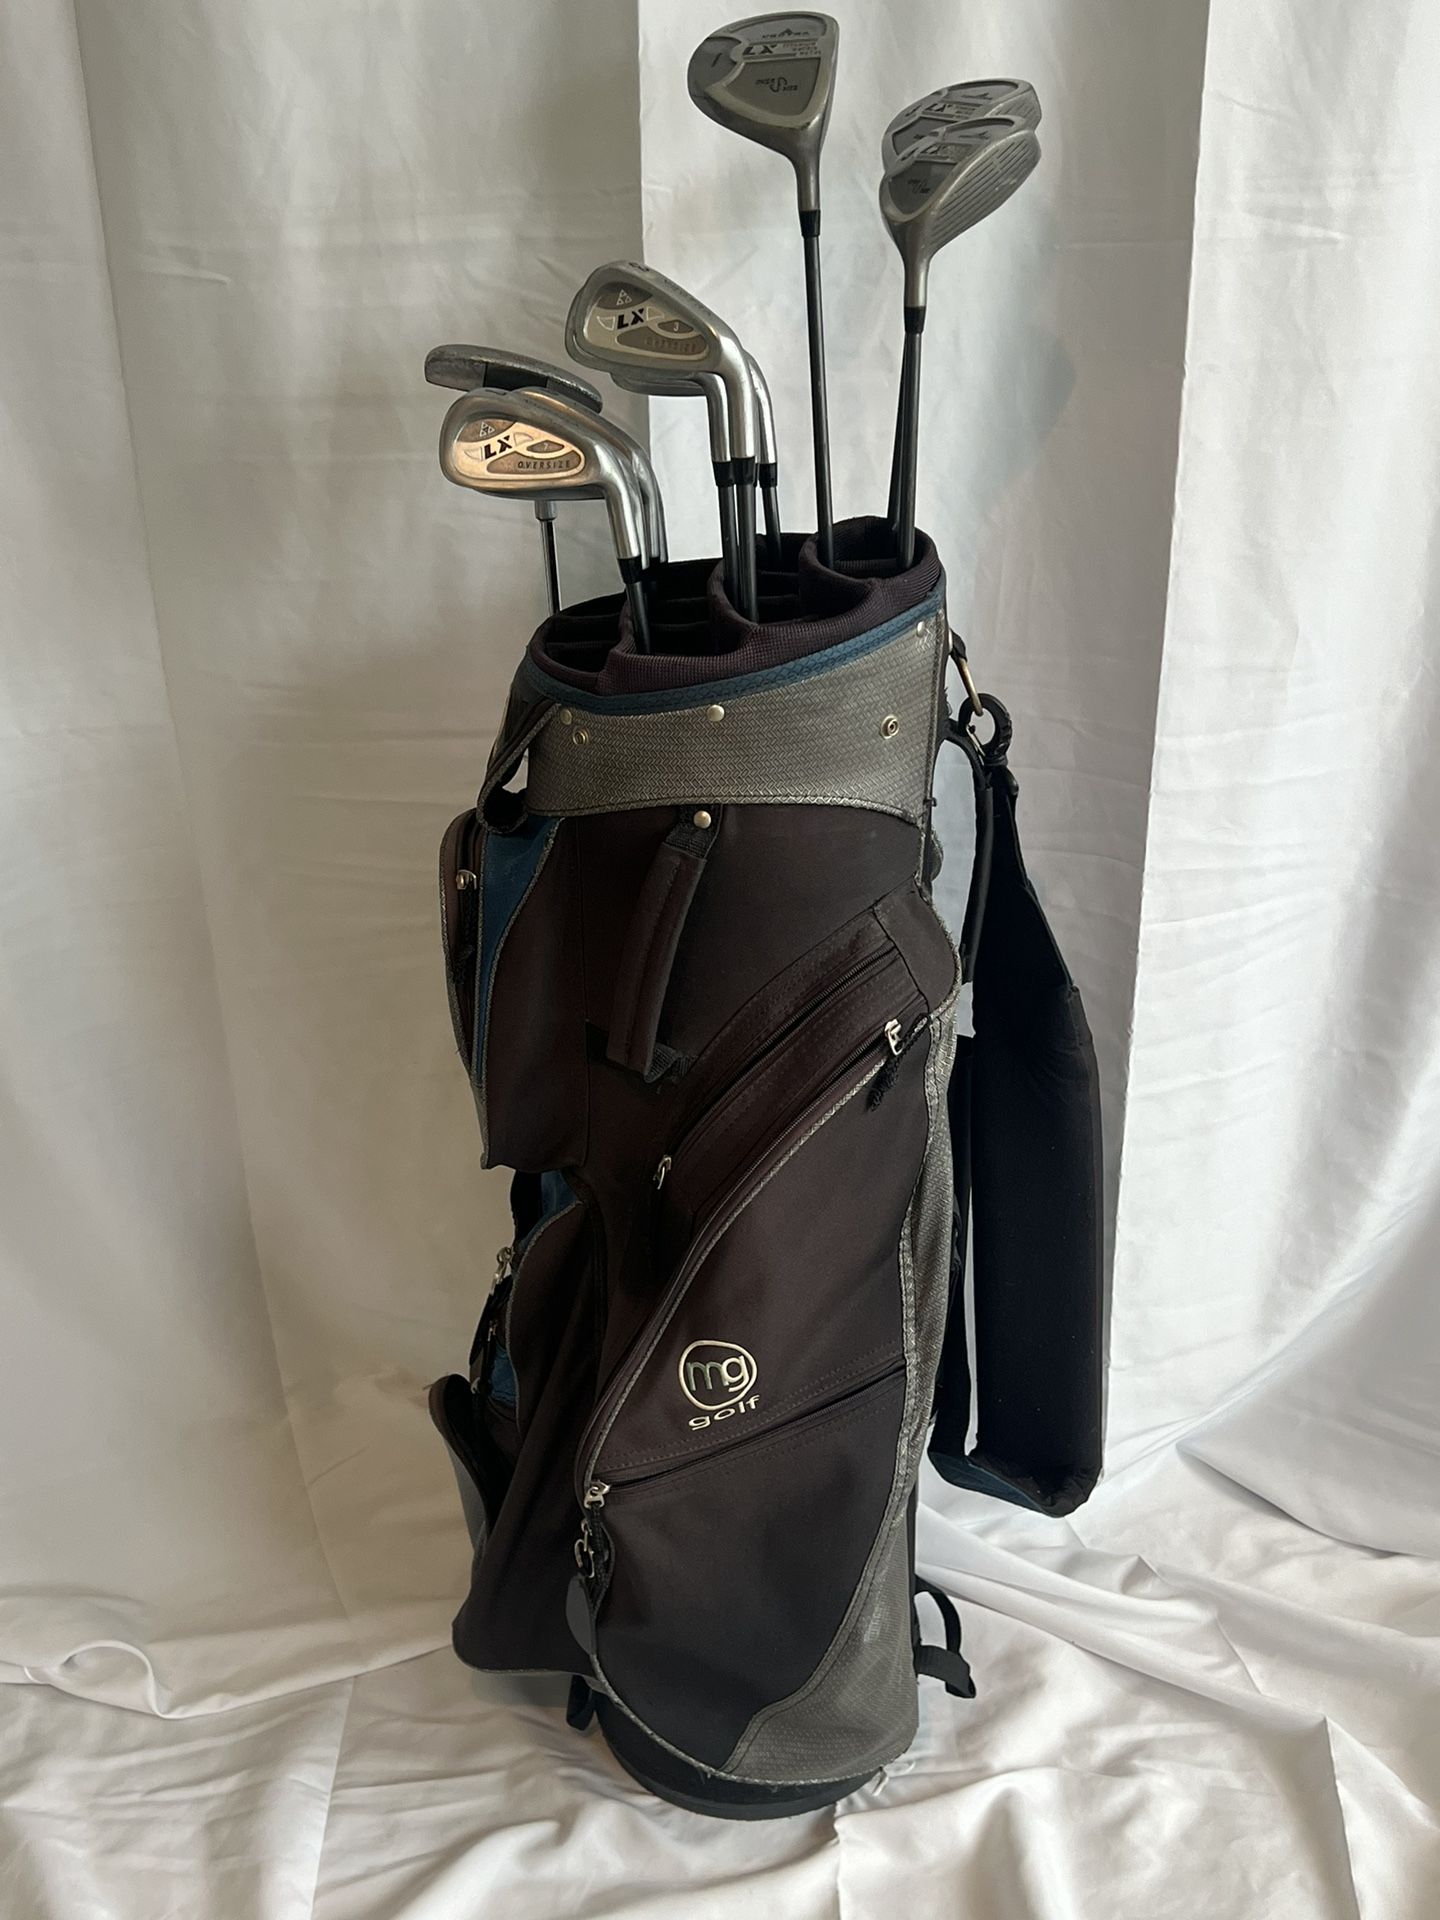 Complete set men’s RH Vectra golf clubs in an MG Golf cart bag